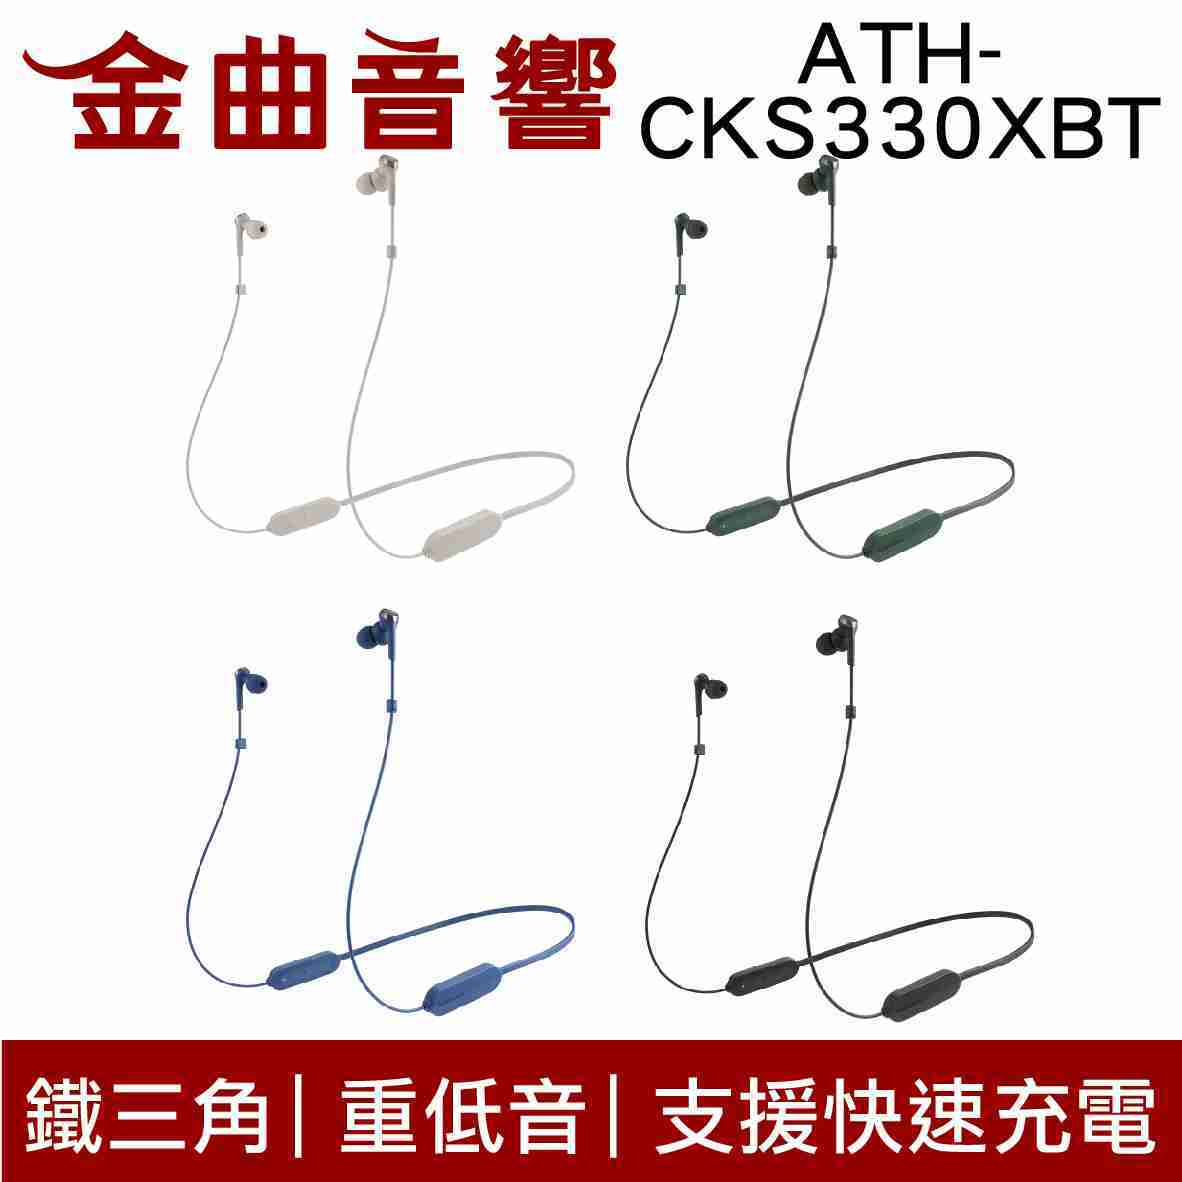 鐵三角 ATH-CKS330XBT 低延遲 無線 藍芽 耳道式耳機 | 金曲音響